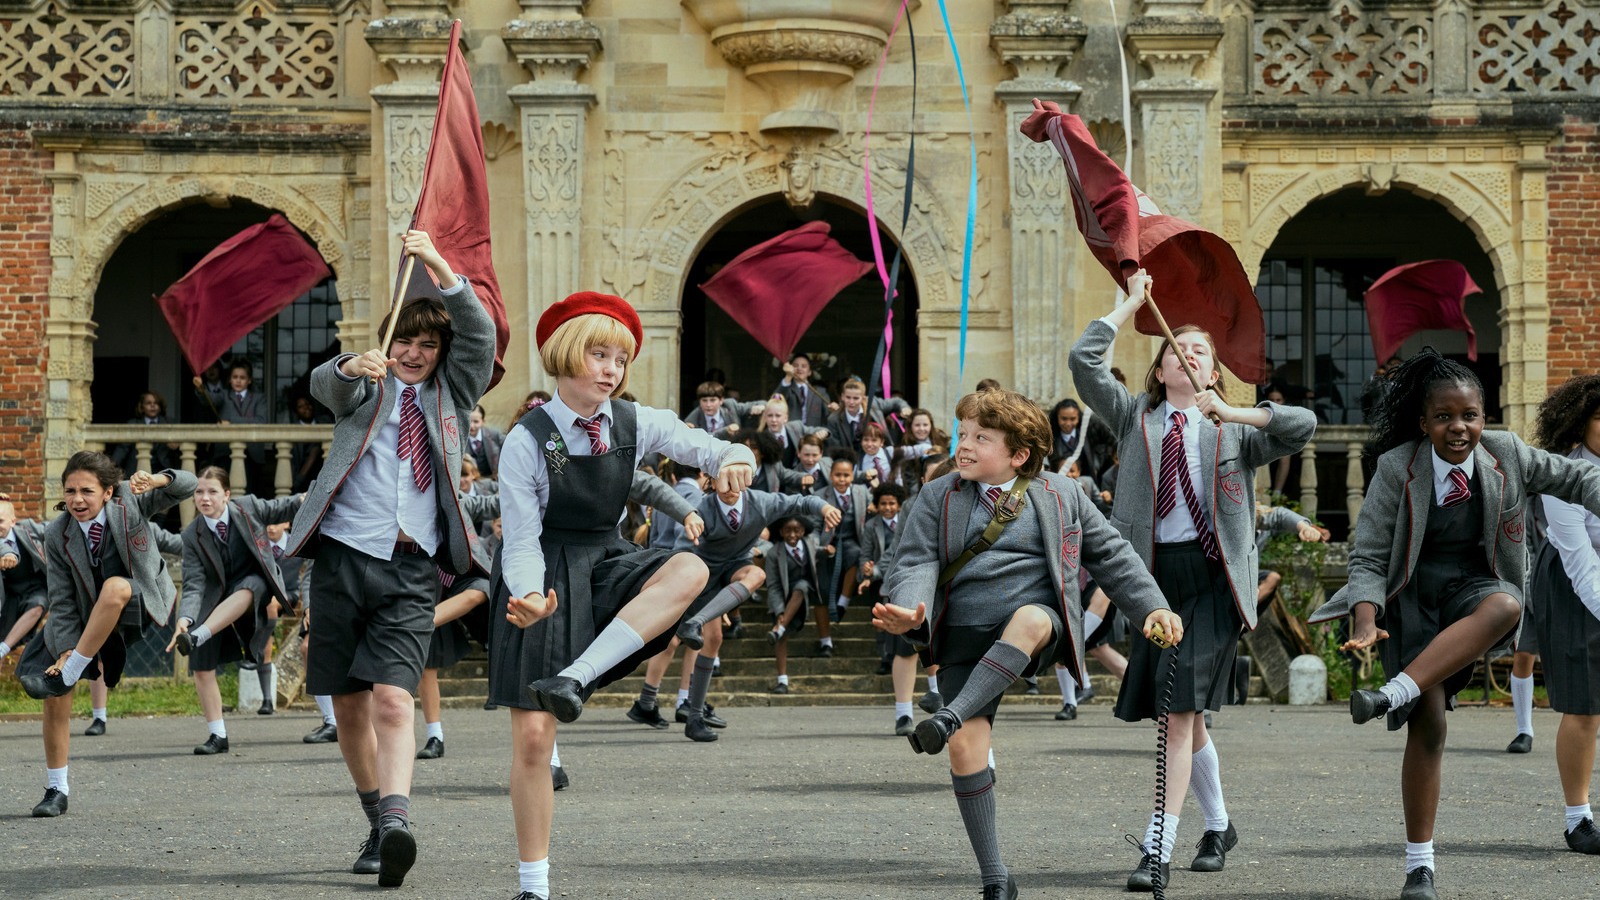 Kids in school uniforms dancing.